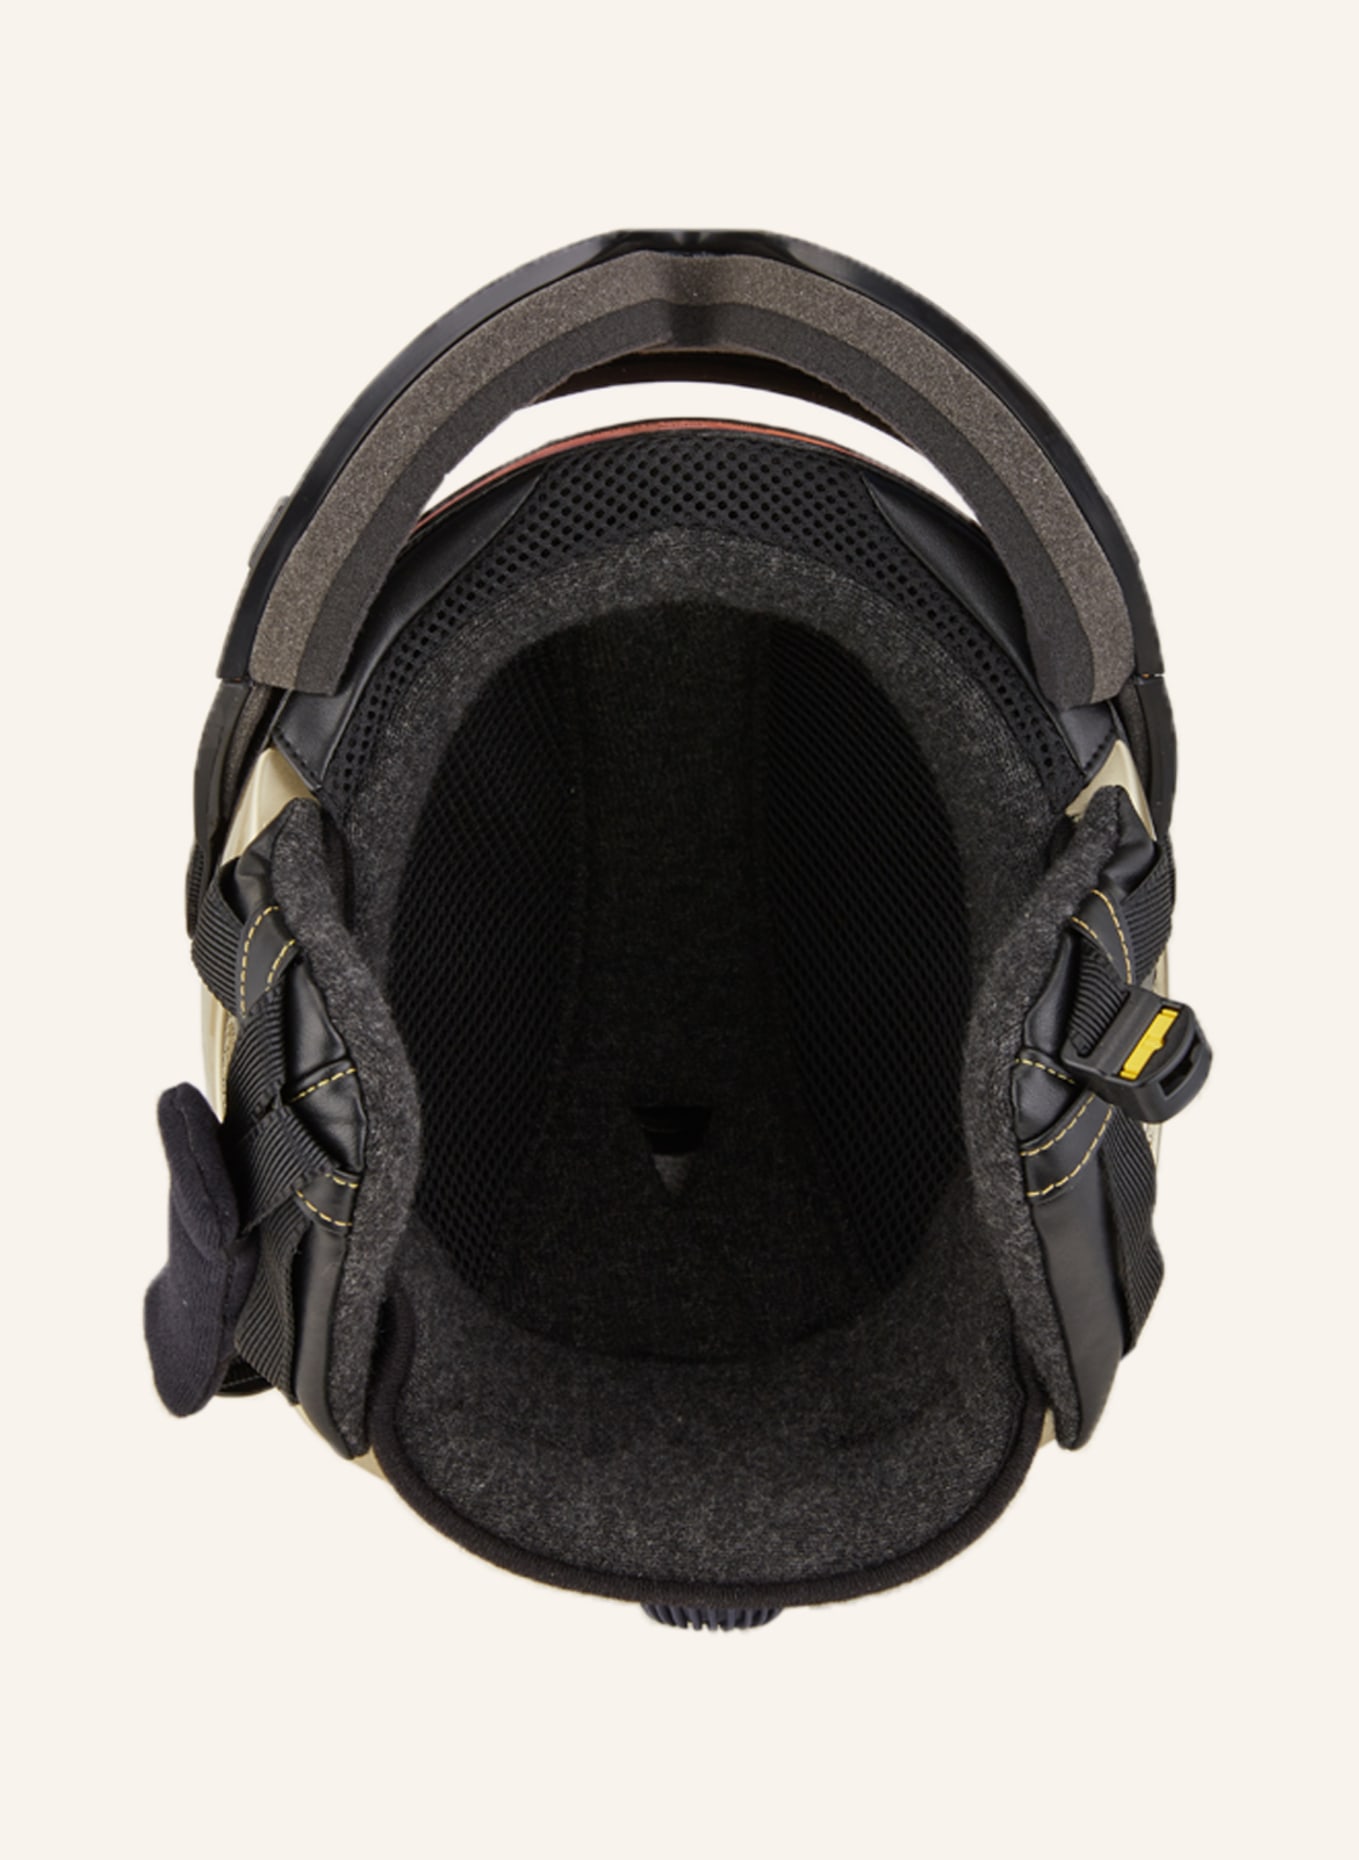 CASCO SP-2 Visier Polarized S1 - Ski helmet, Buy online